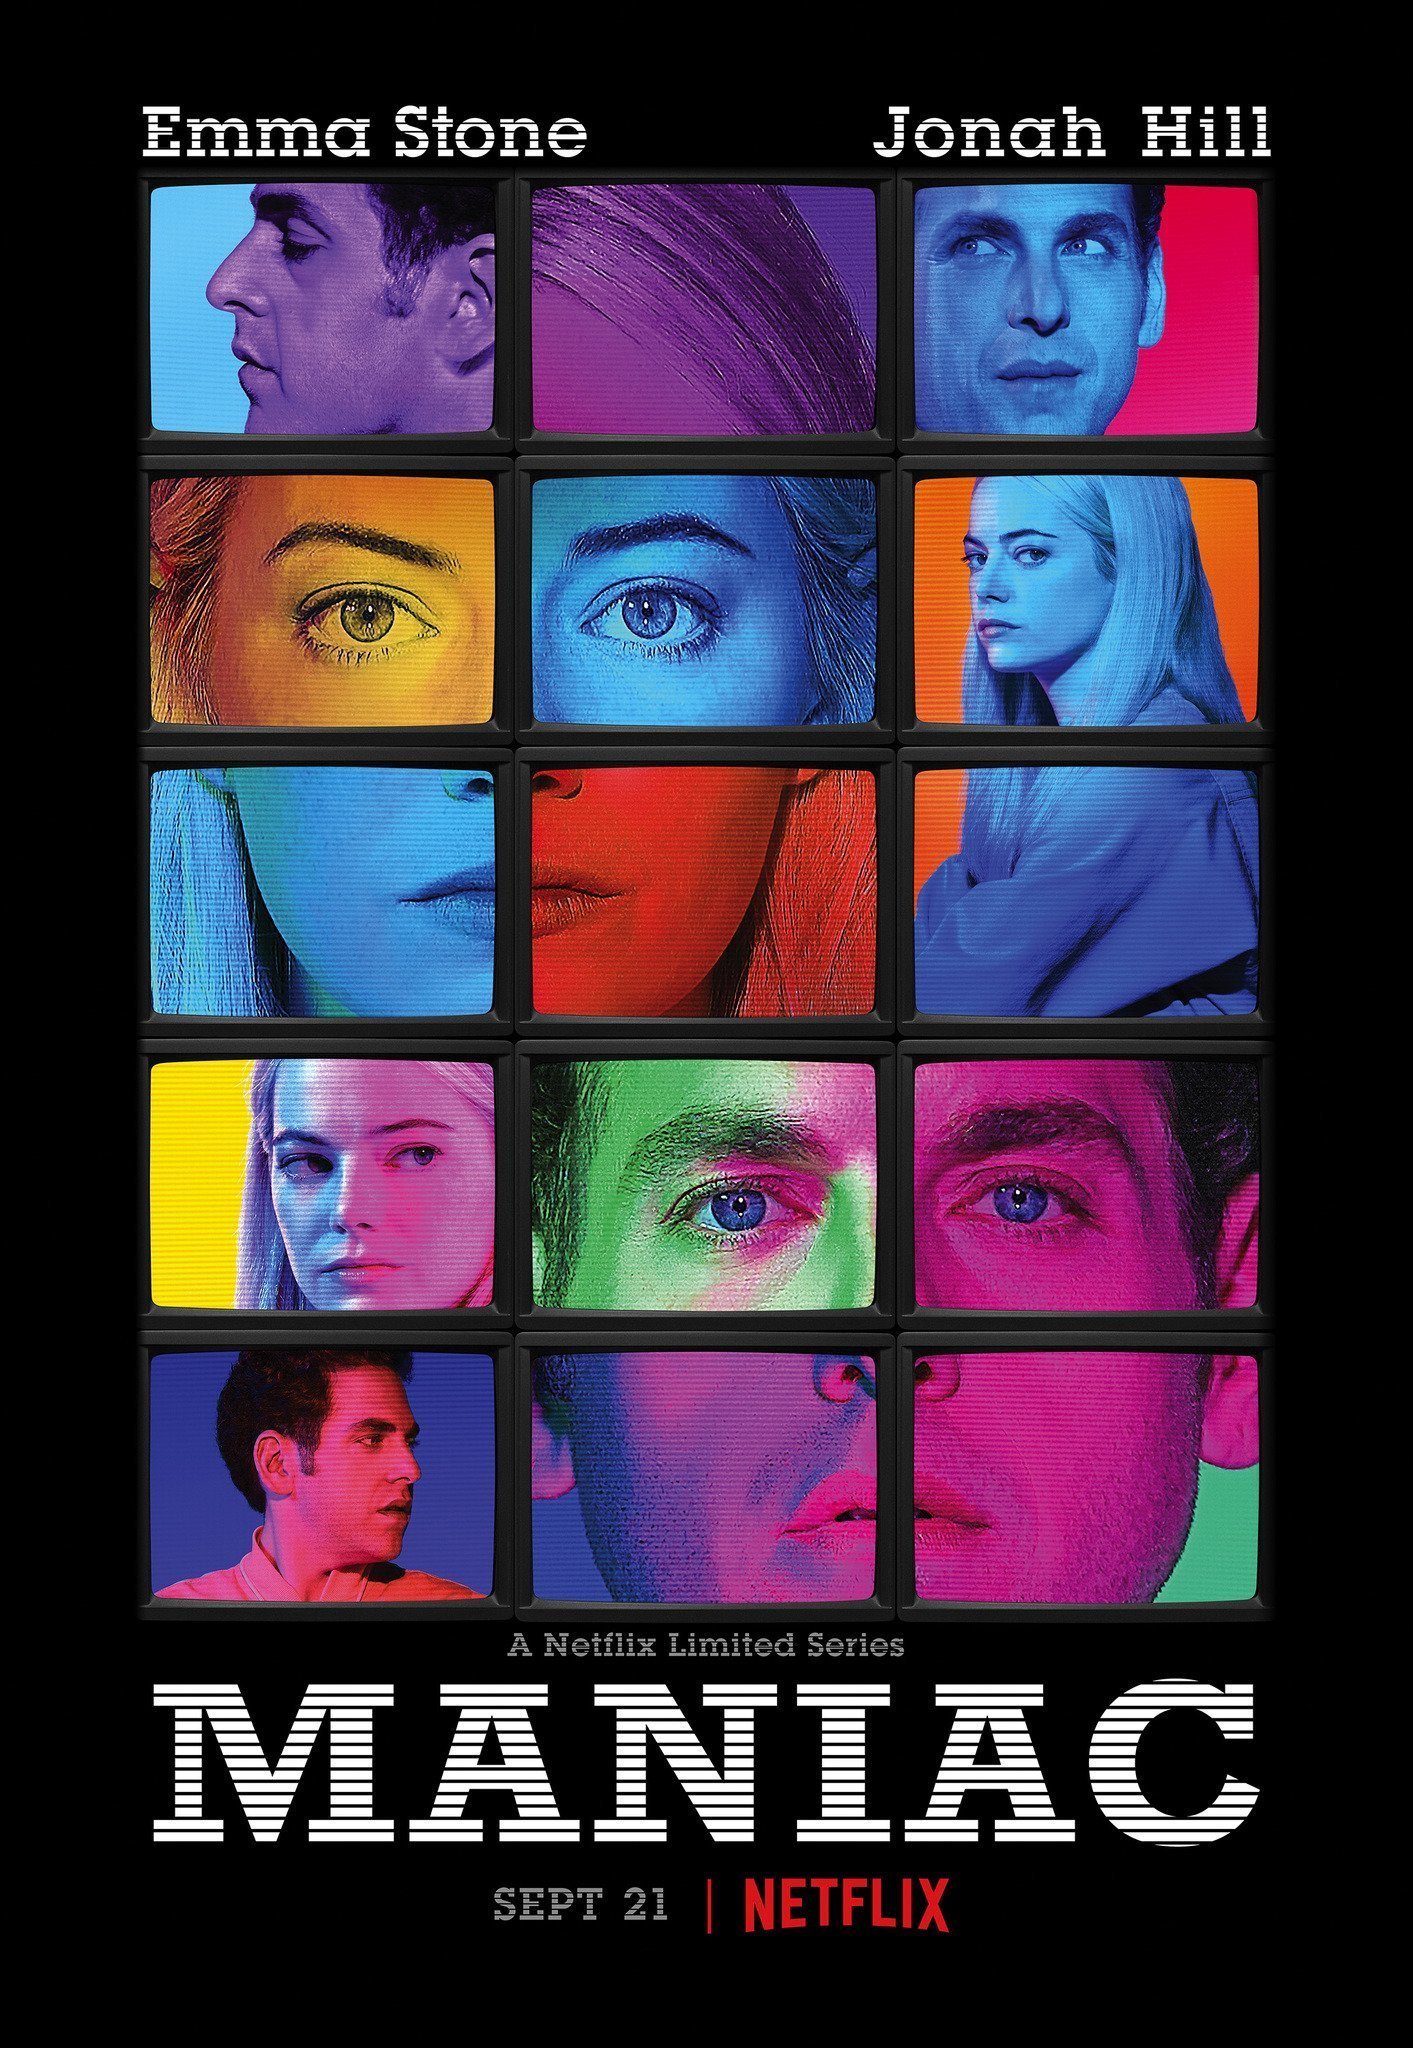 Poster de la mini-série Maniac pour Netflix